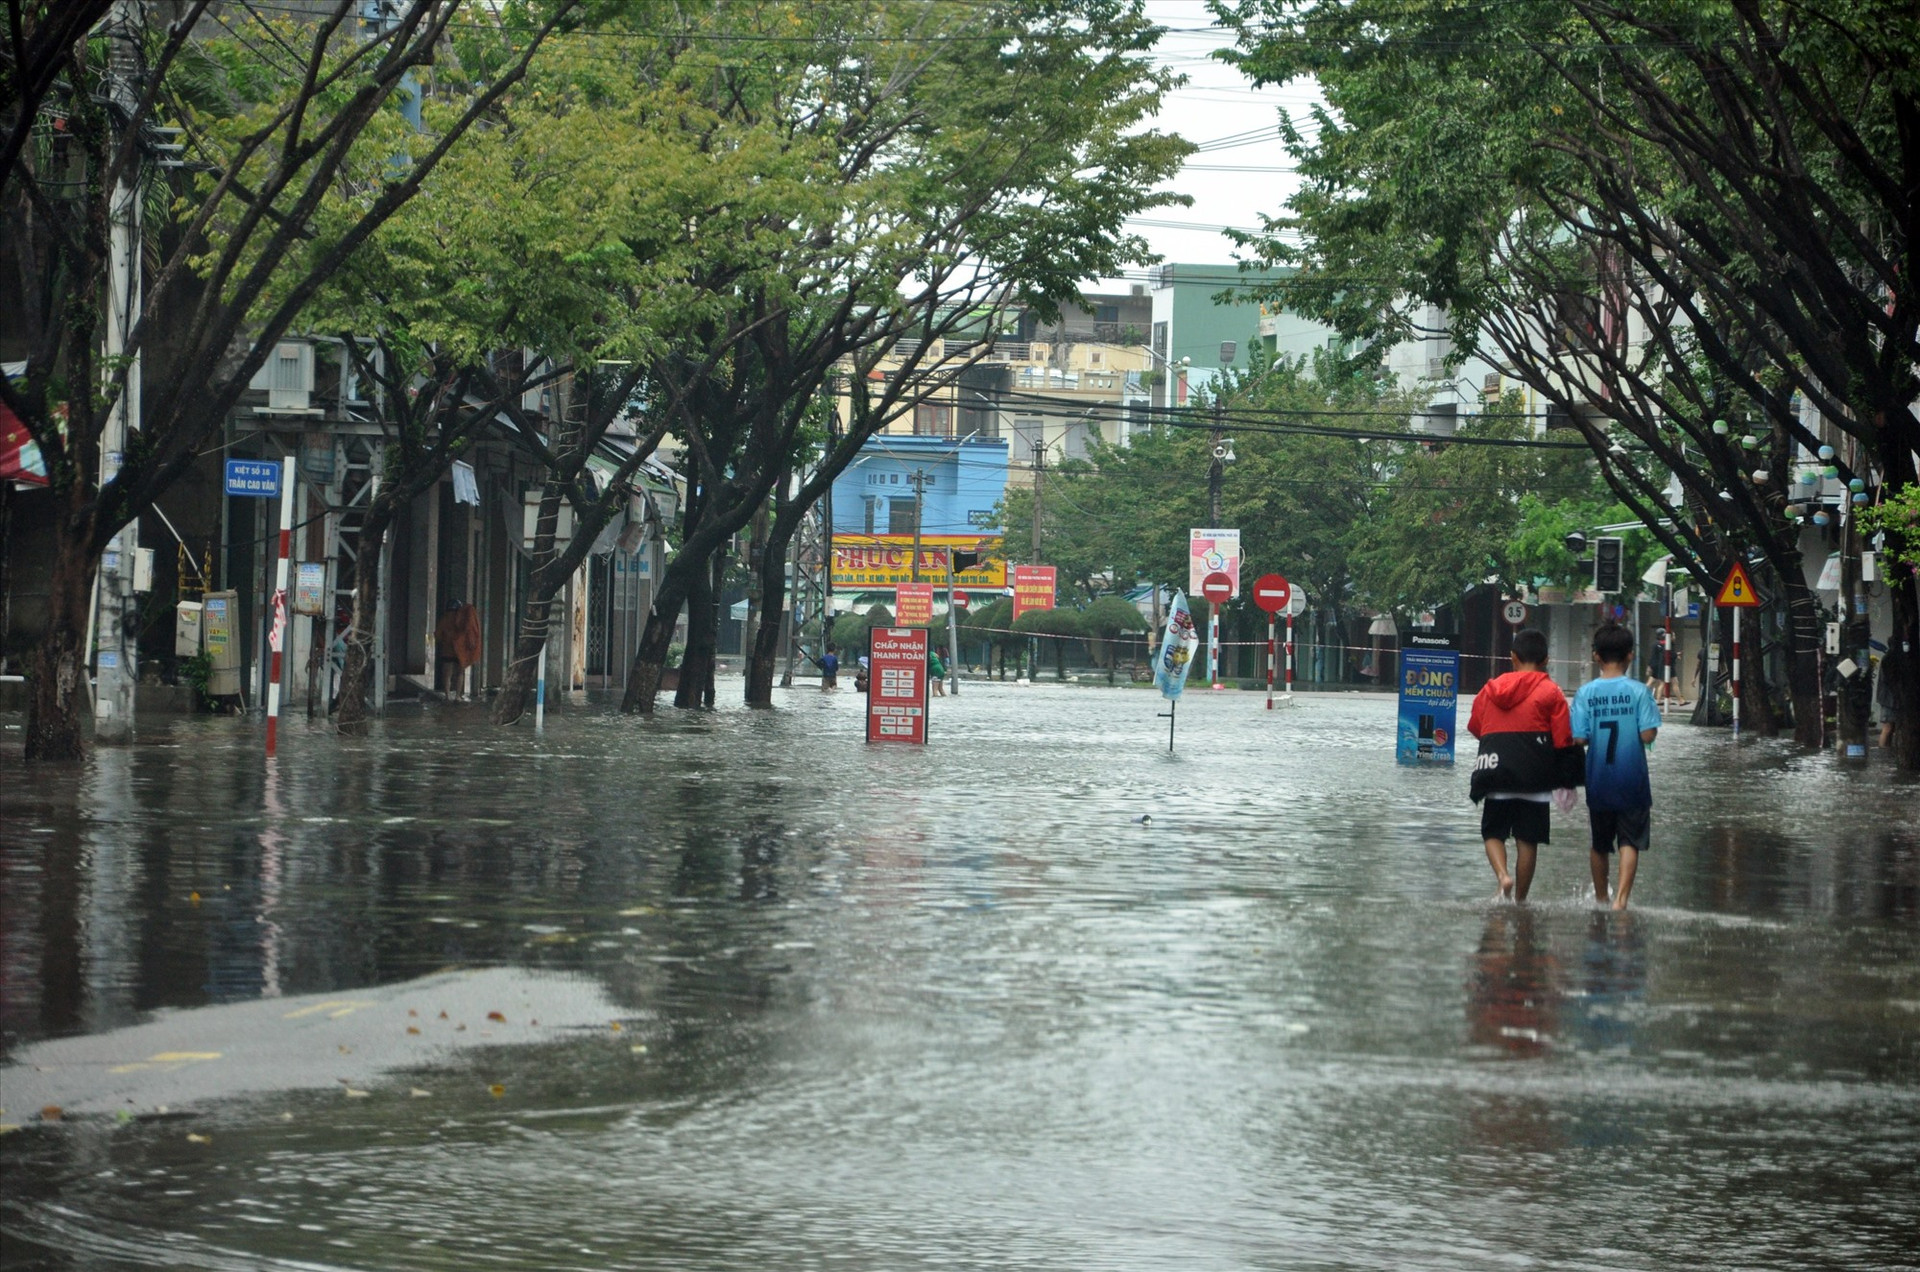 Tình trạng ngập lụt khu vực nội đô Tam Kỳ ngày càng nặng. Ảnh: X.P